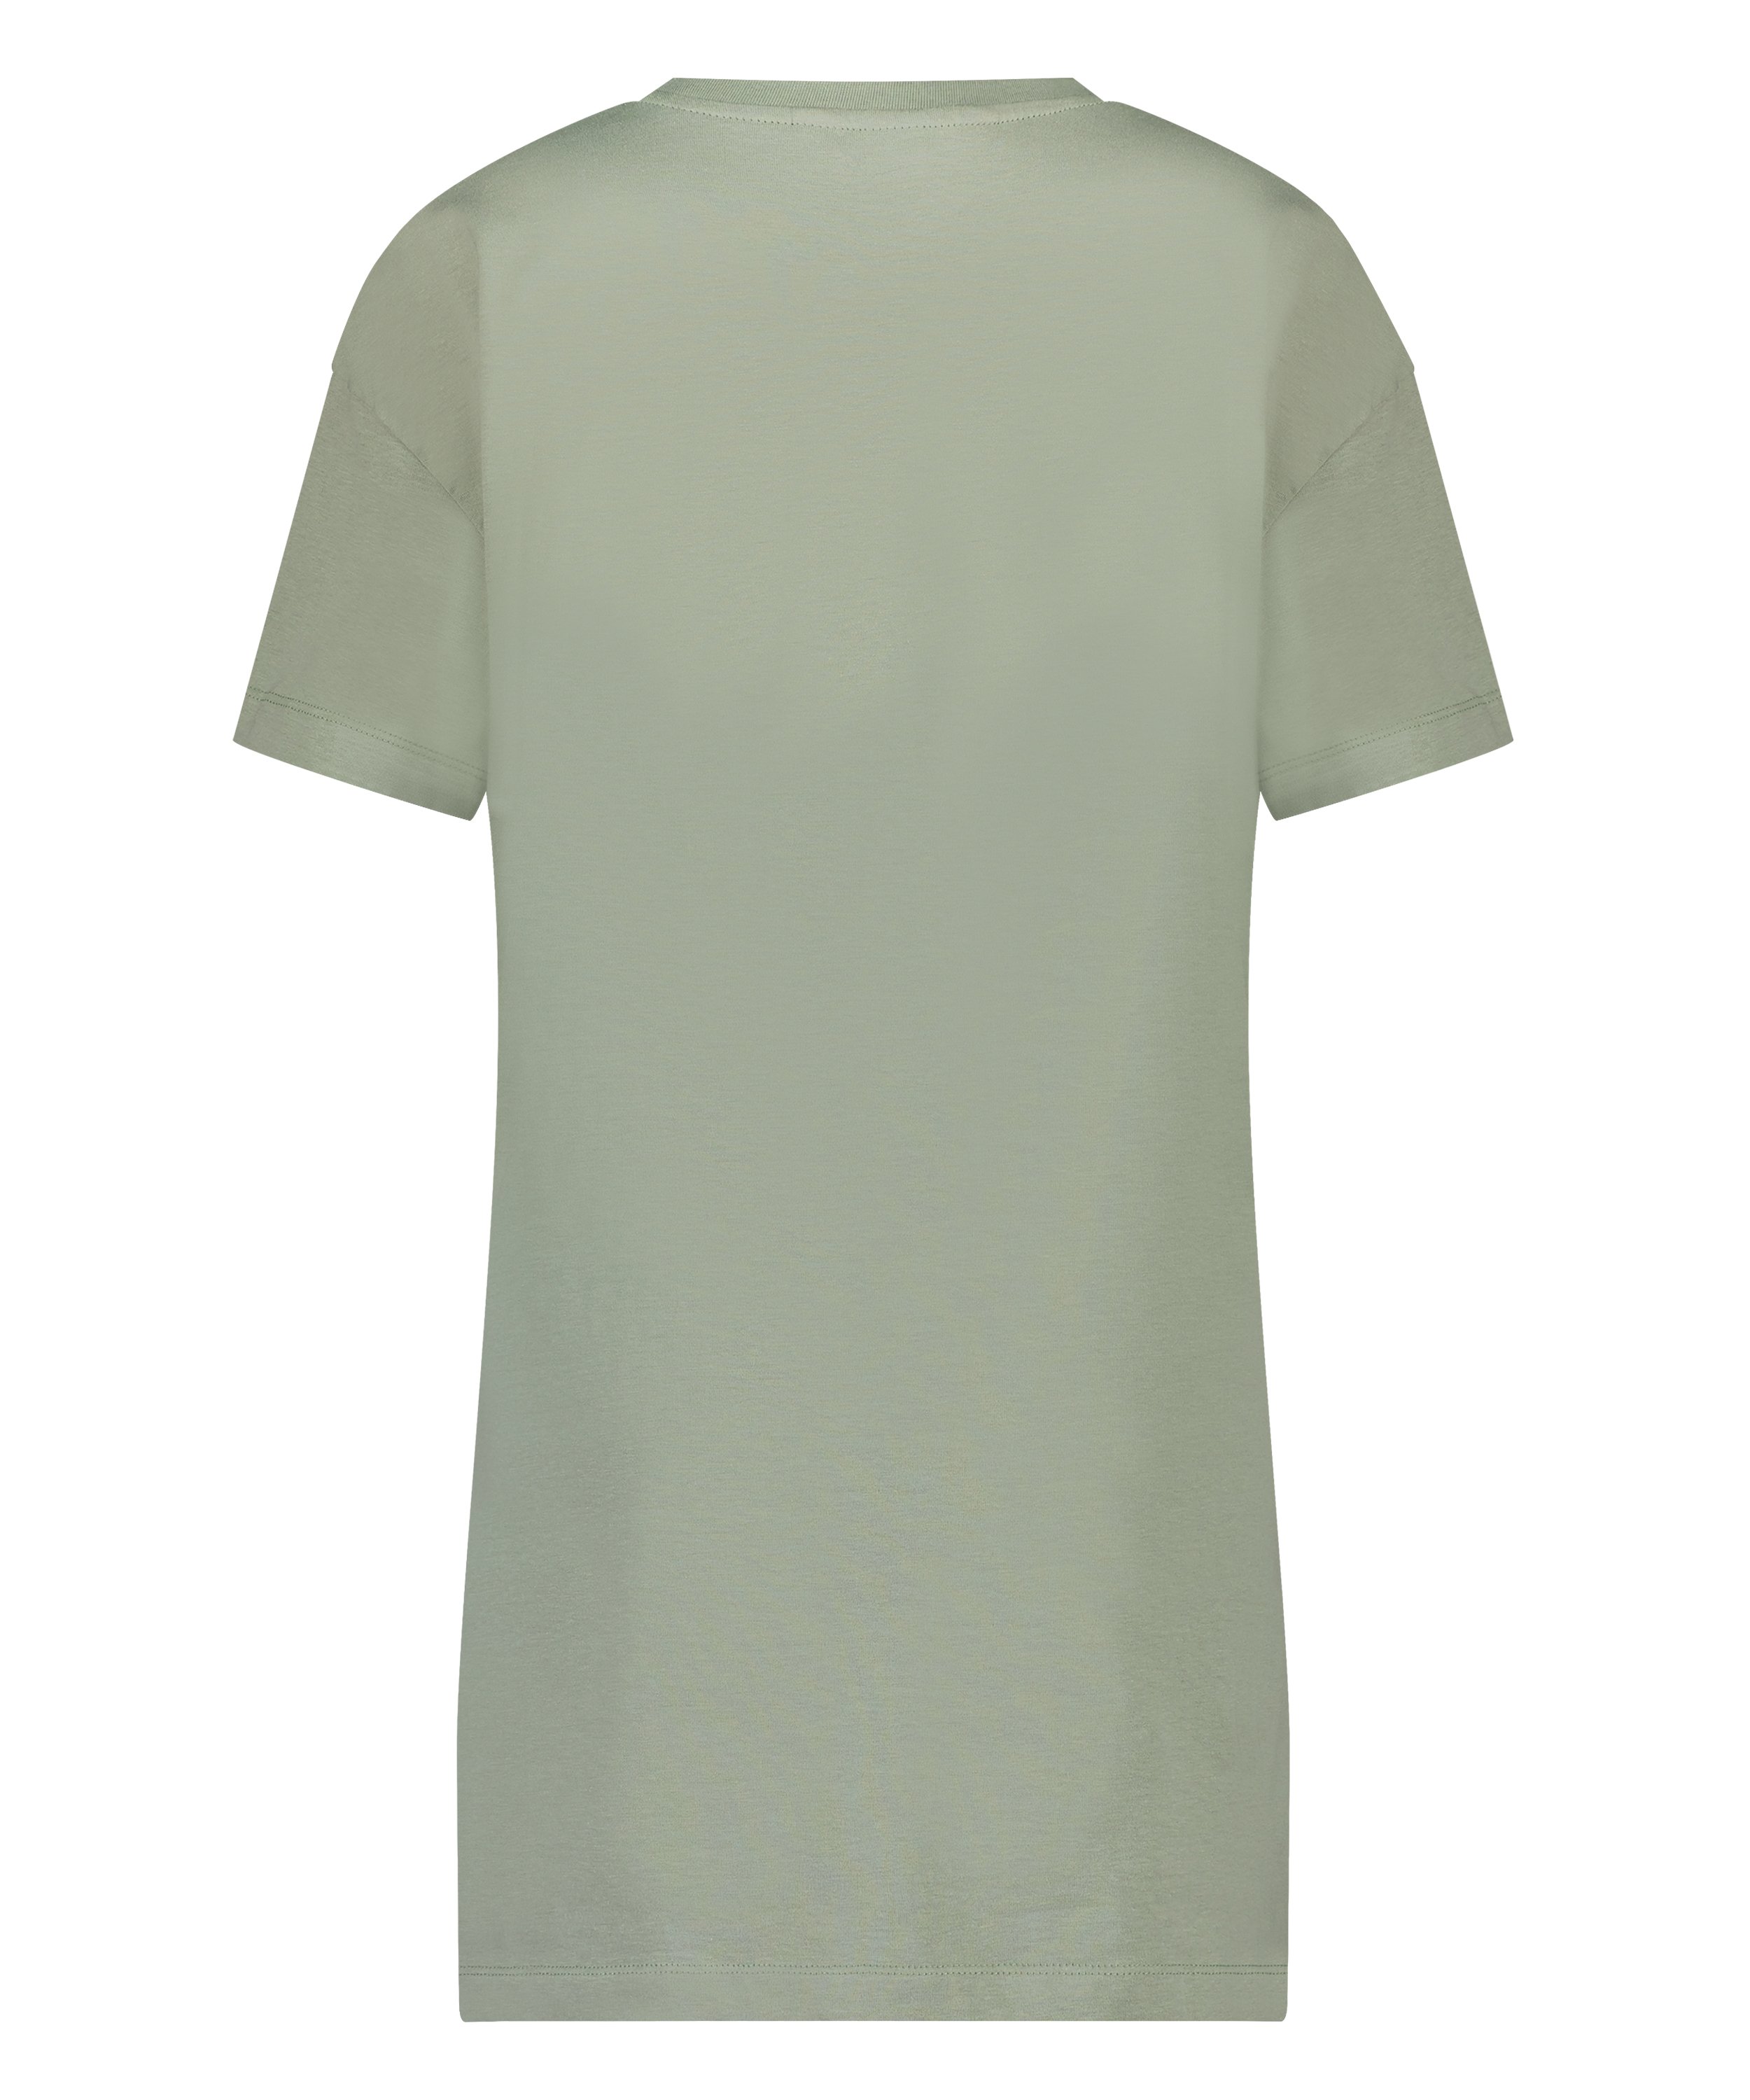 Nat-T-shirt med rund hals, grøn, main